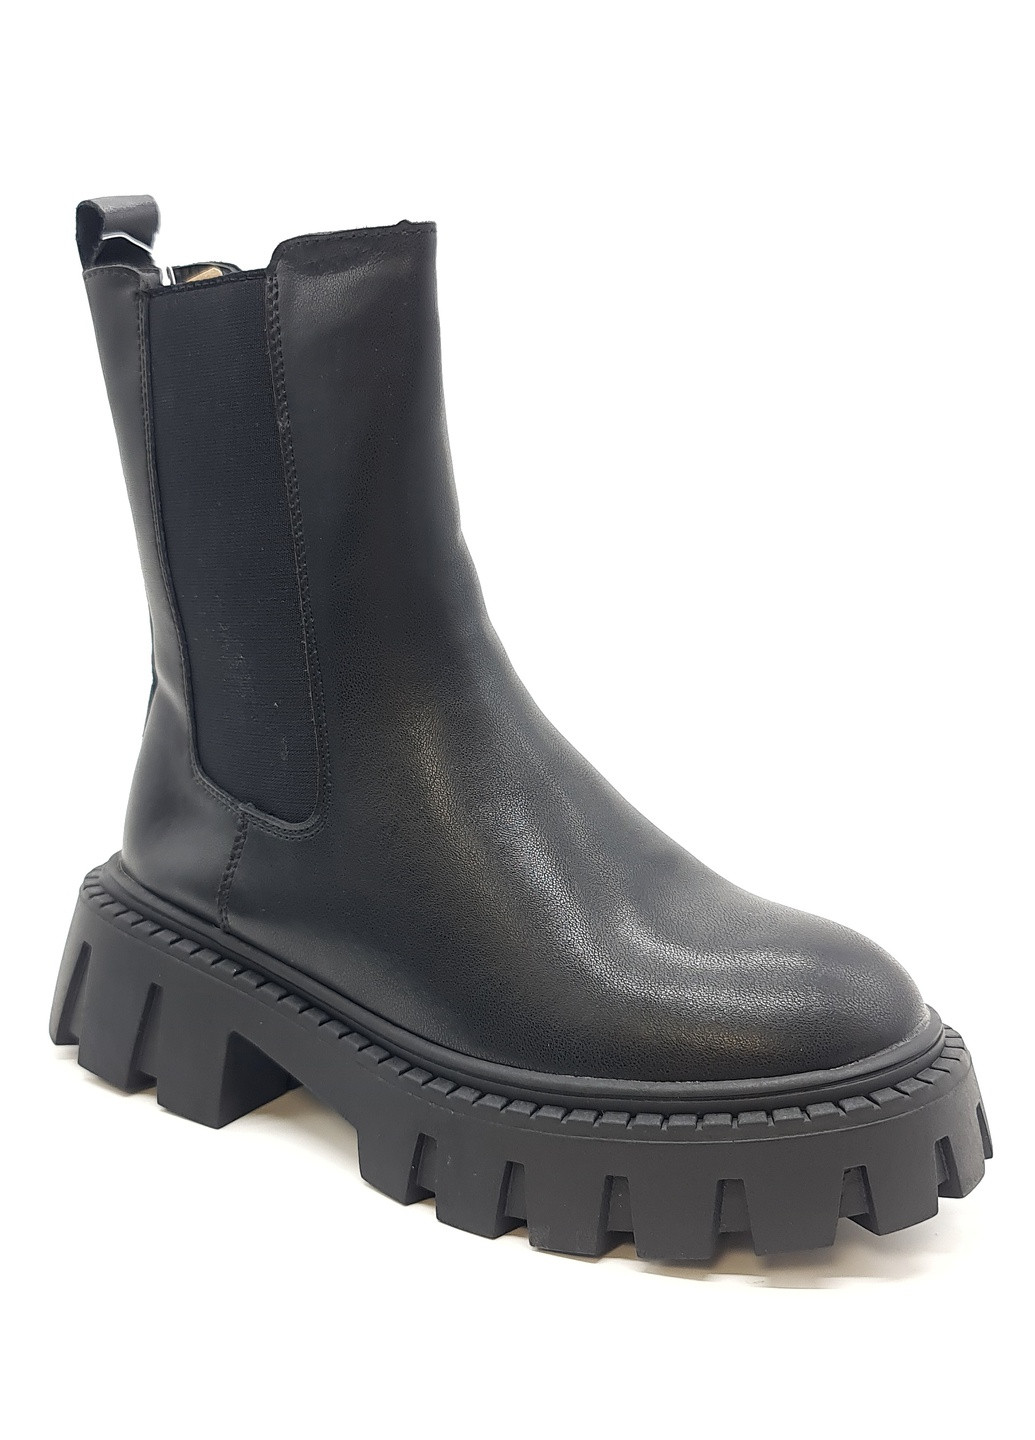 Осенние женские ботинки зимние черные кожаные ii-11-8 23 см(р) It is